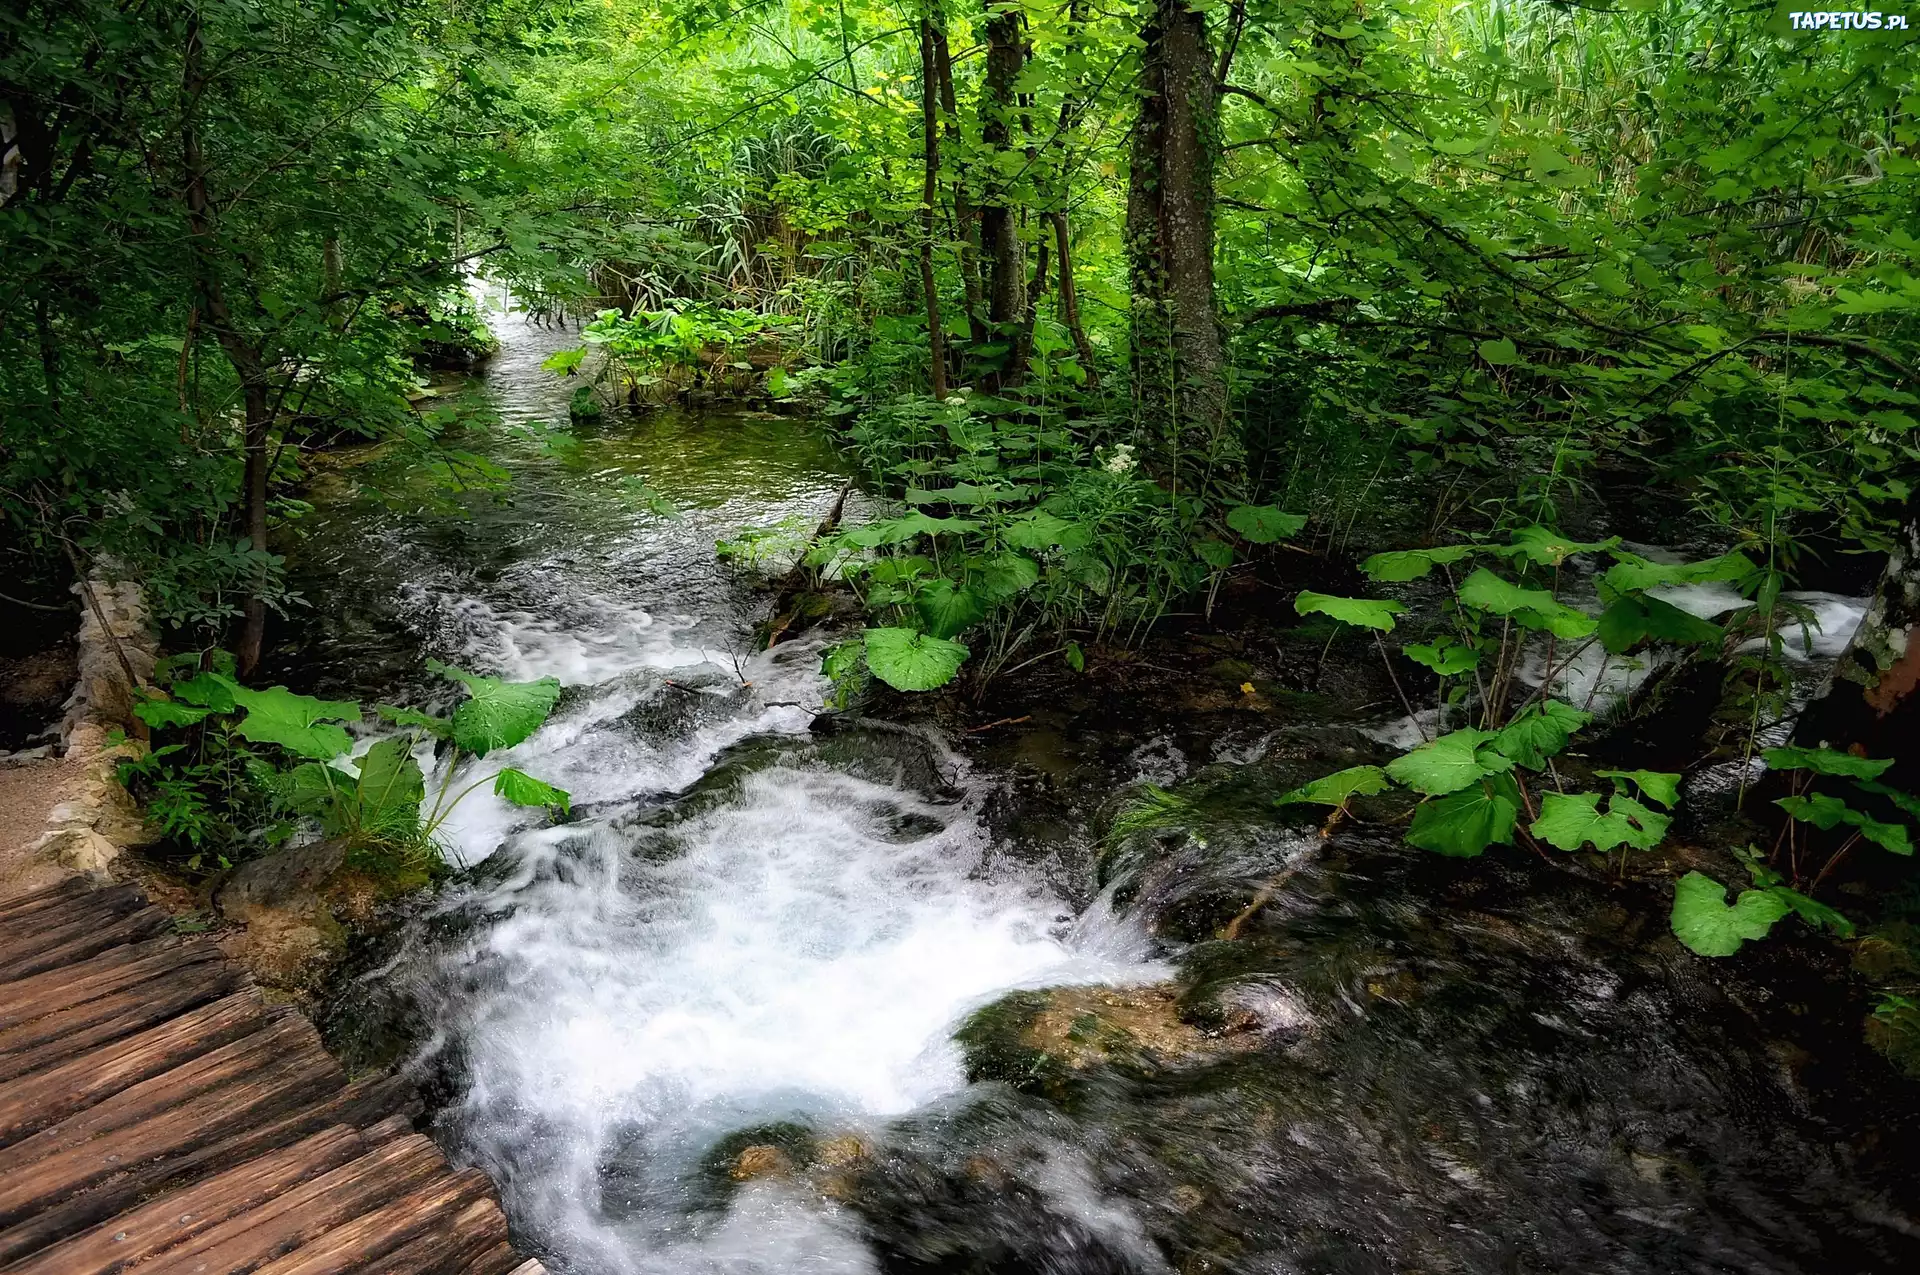 Сильный шум воды. Лесная река. Речка в лесу. Лес ручей птицы. Вода ручей.